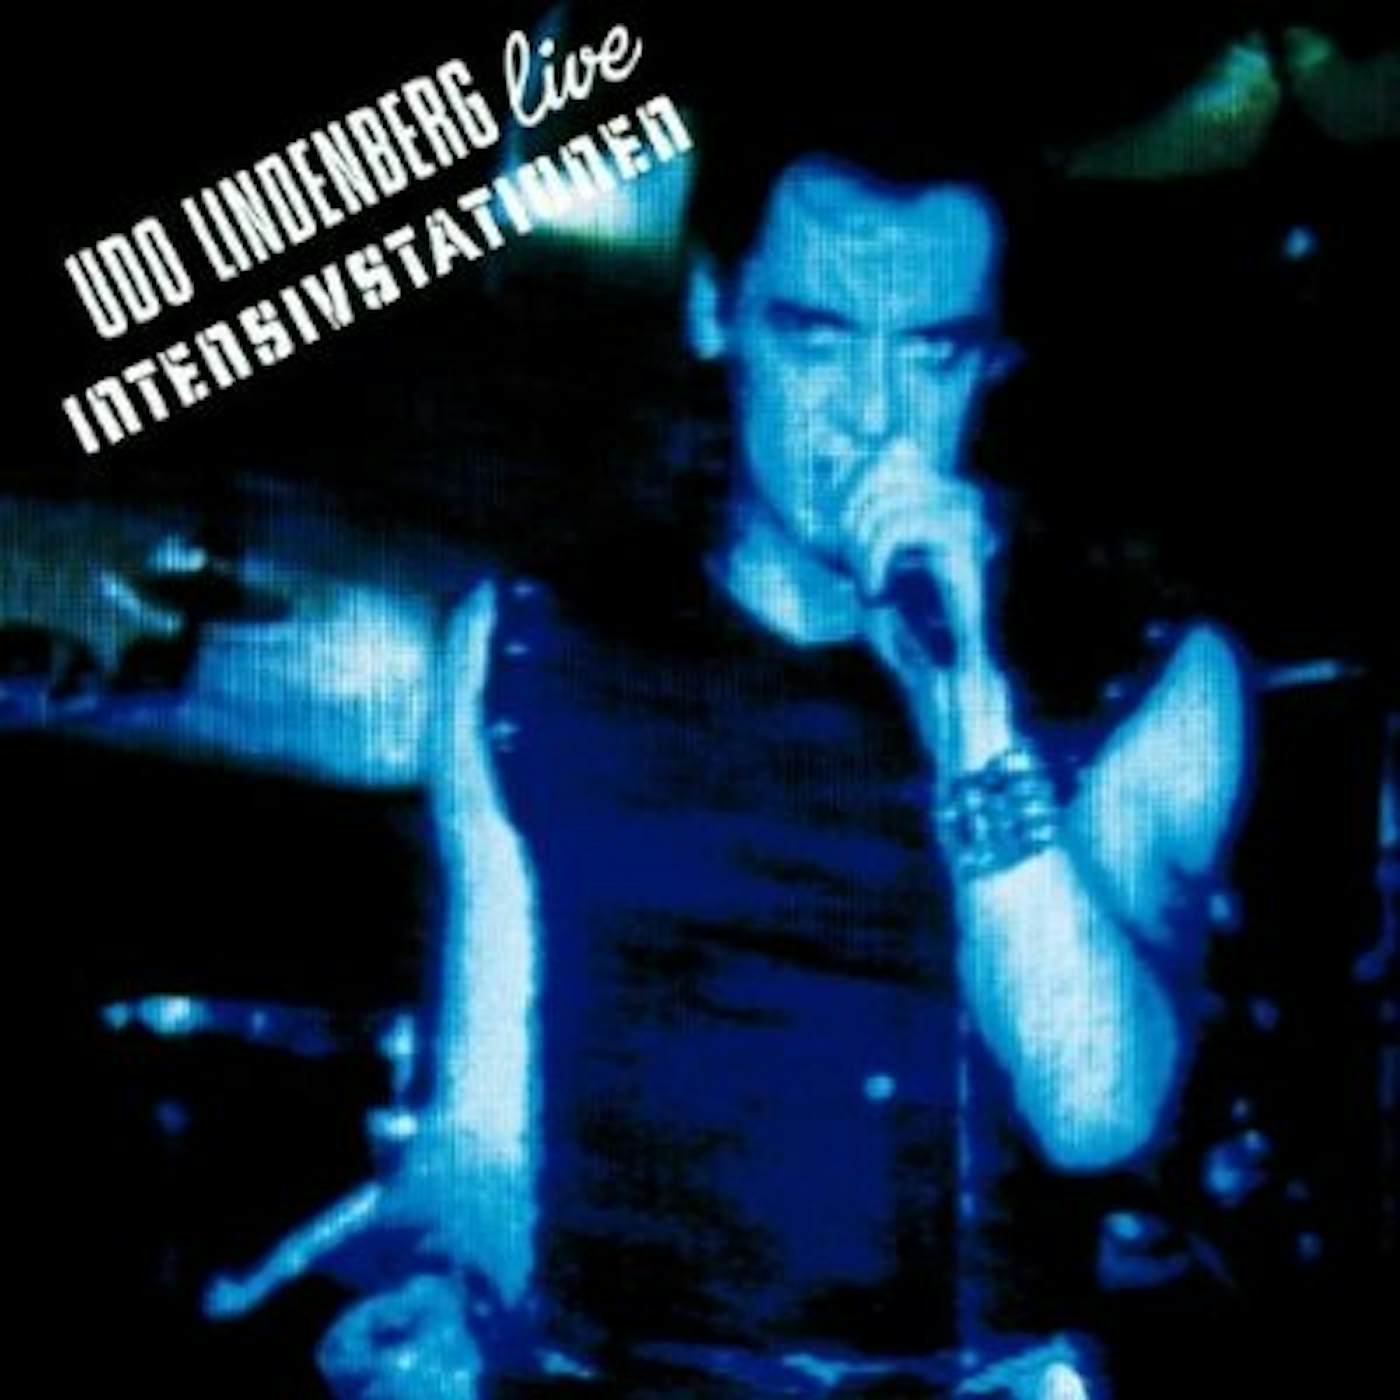 Udo Lindenberg INTENSIVSTATIONEN CD